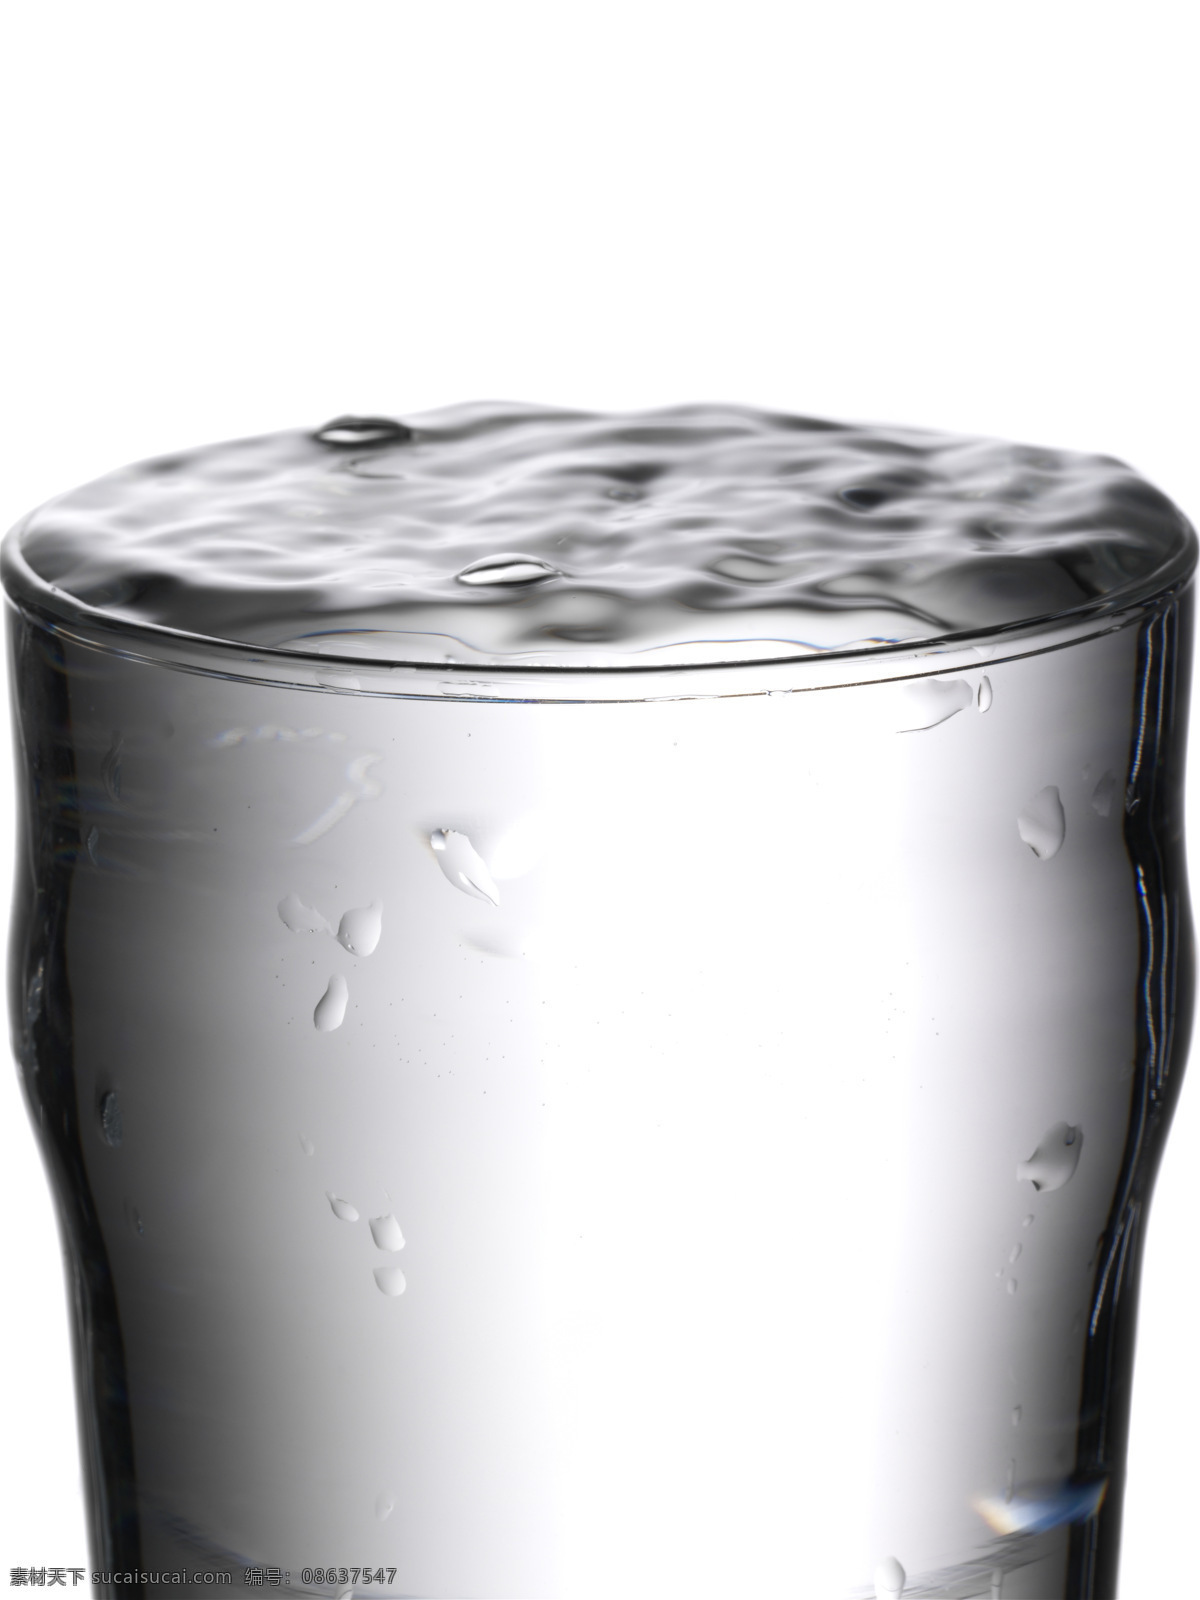 杯子 动感 涟漪 水滴 水珠 满满 杯水 设计素材 模板下载 满满的一杯水 矢量图 日常生活